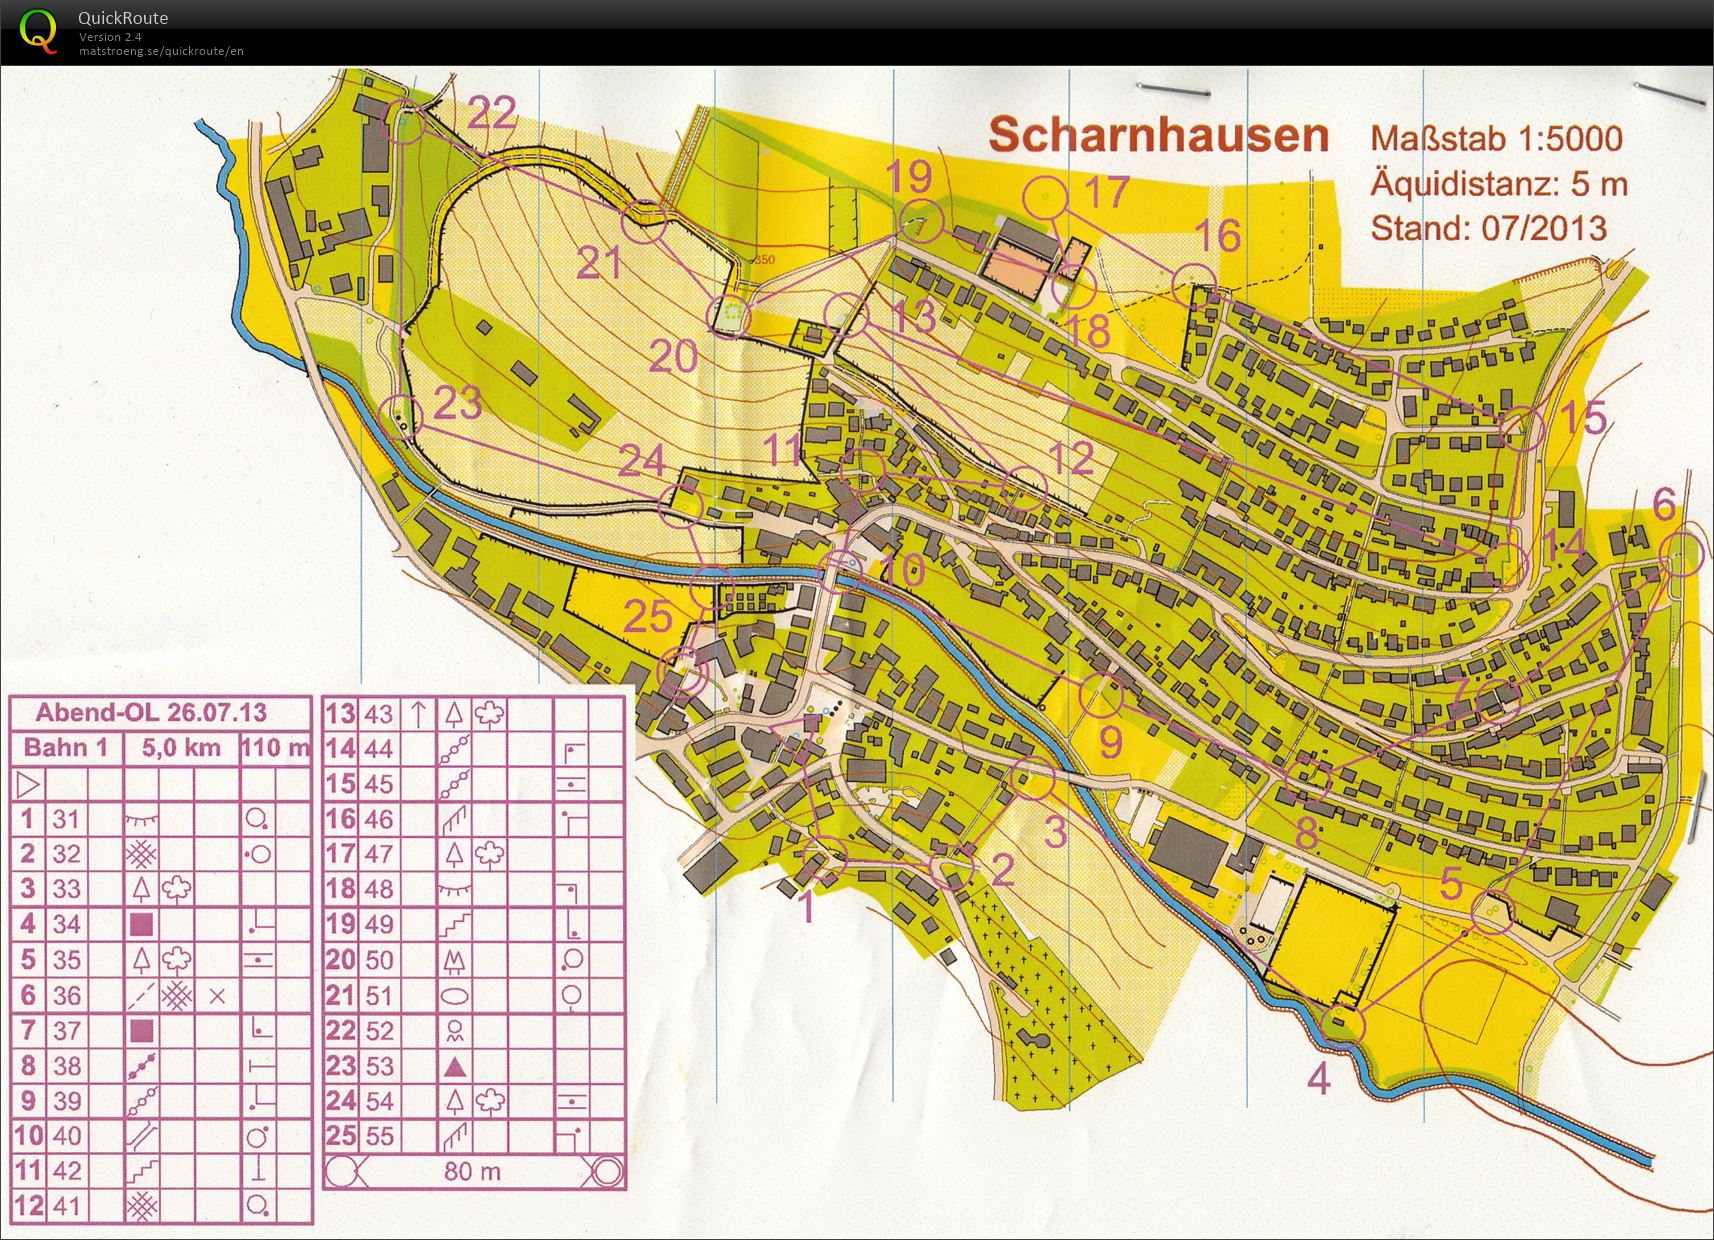 Training Scharnhausen (26/07/2013)